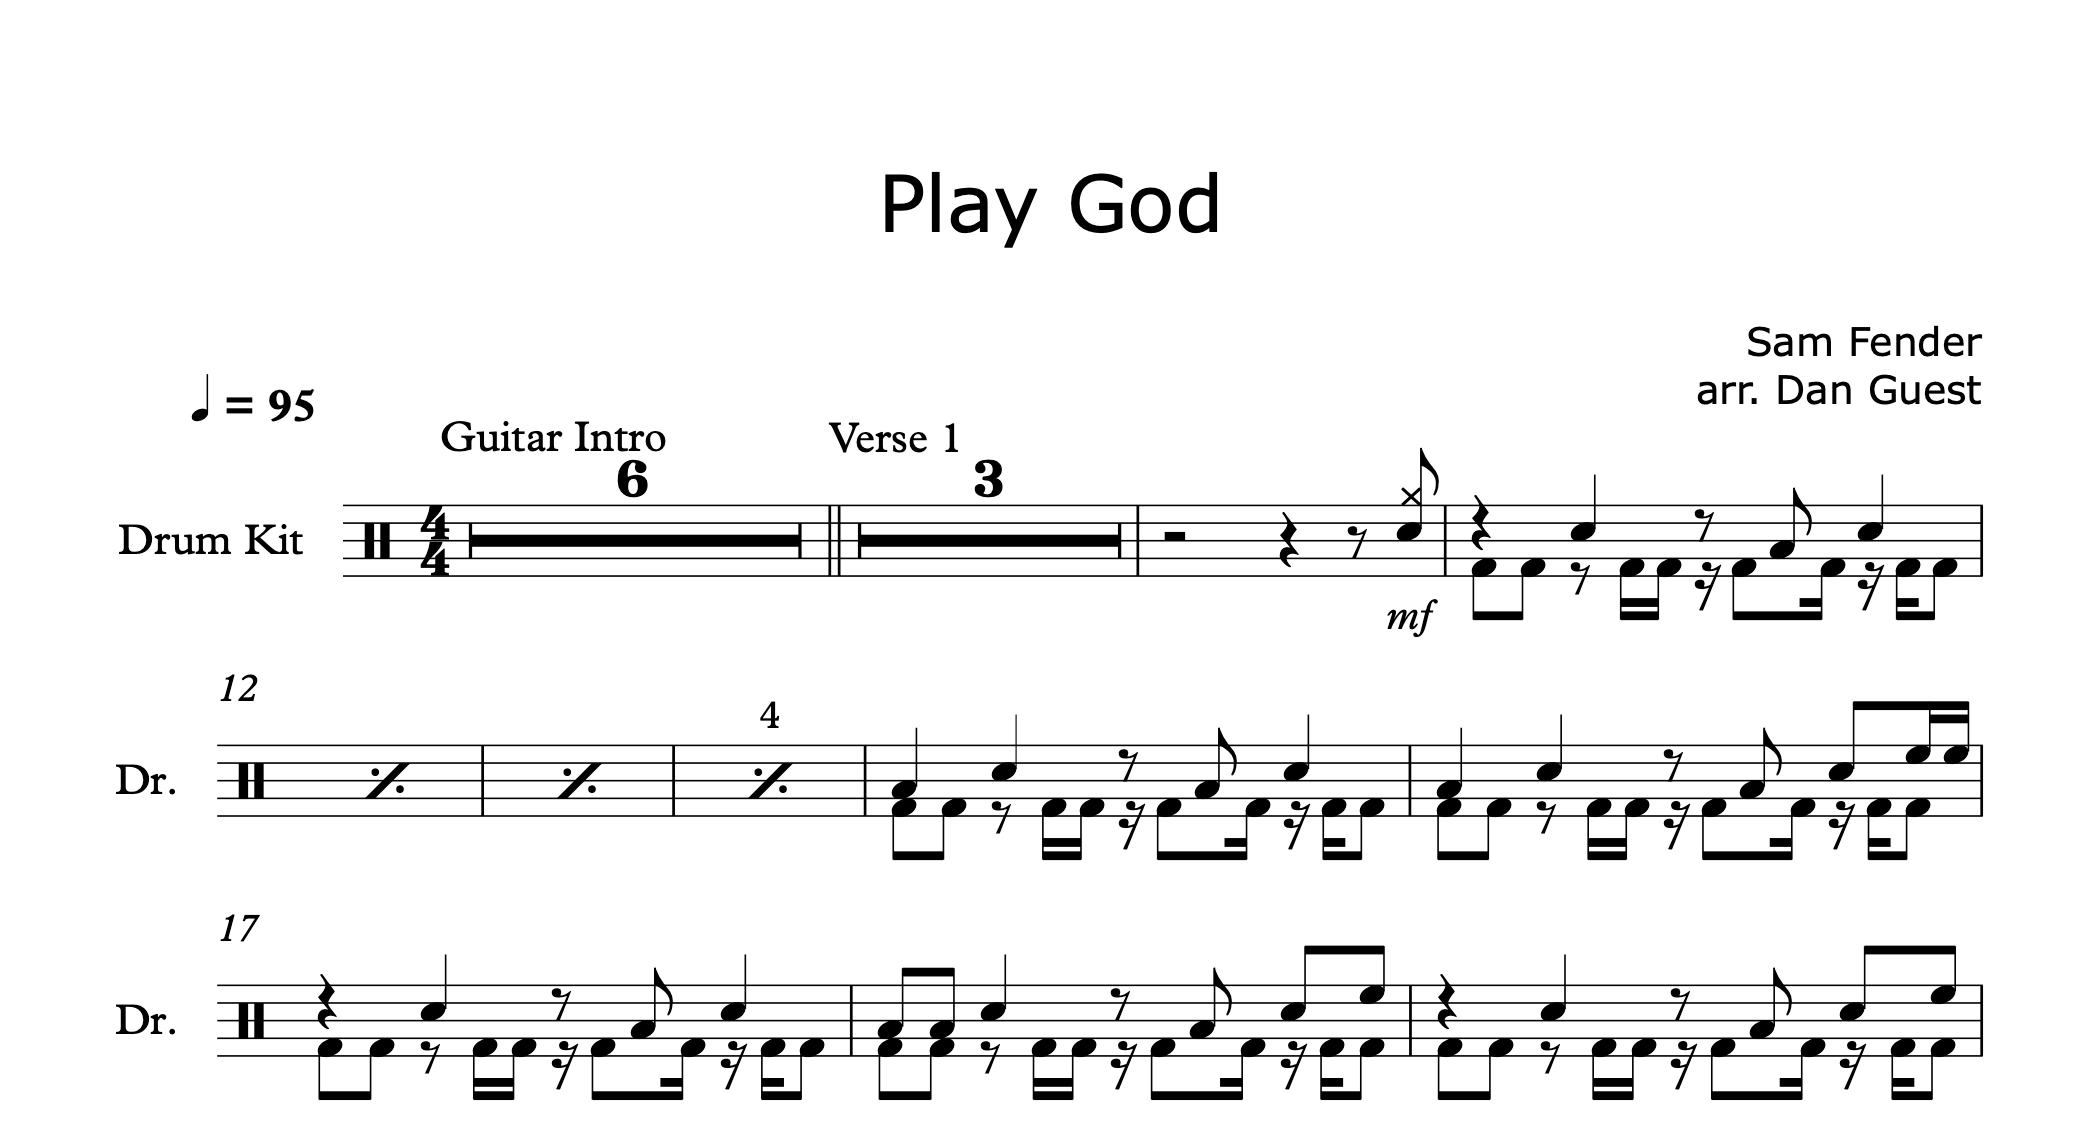 Play God by Sam Fender — DAN GUEST